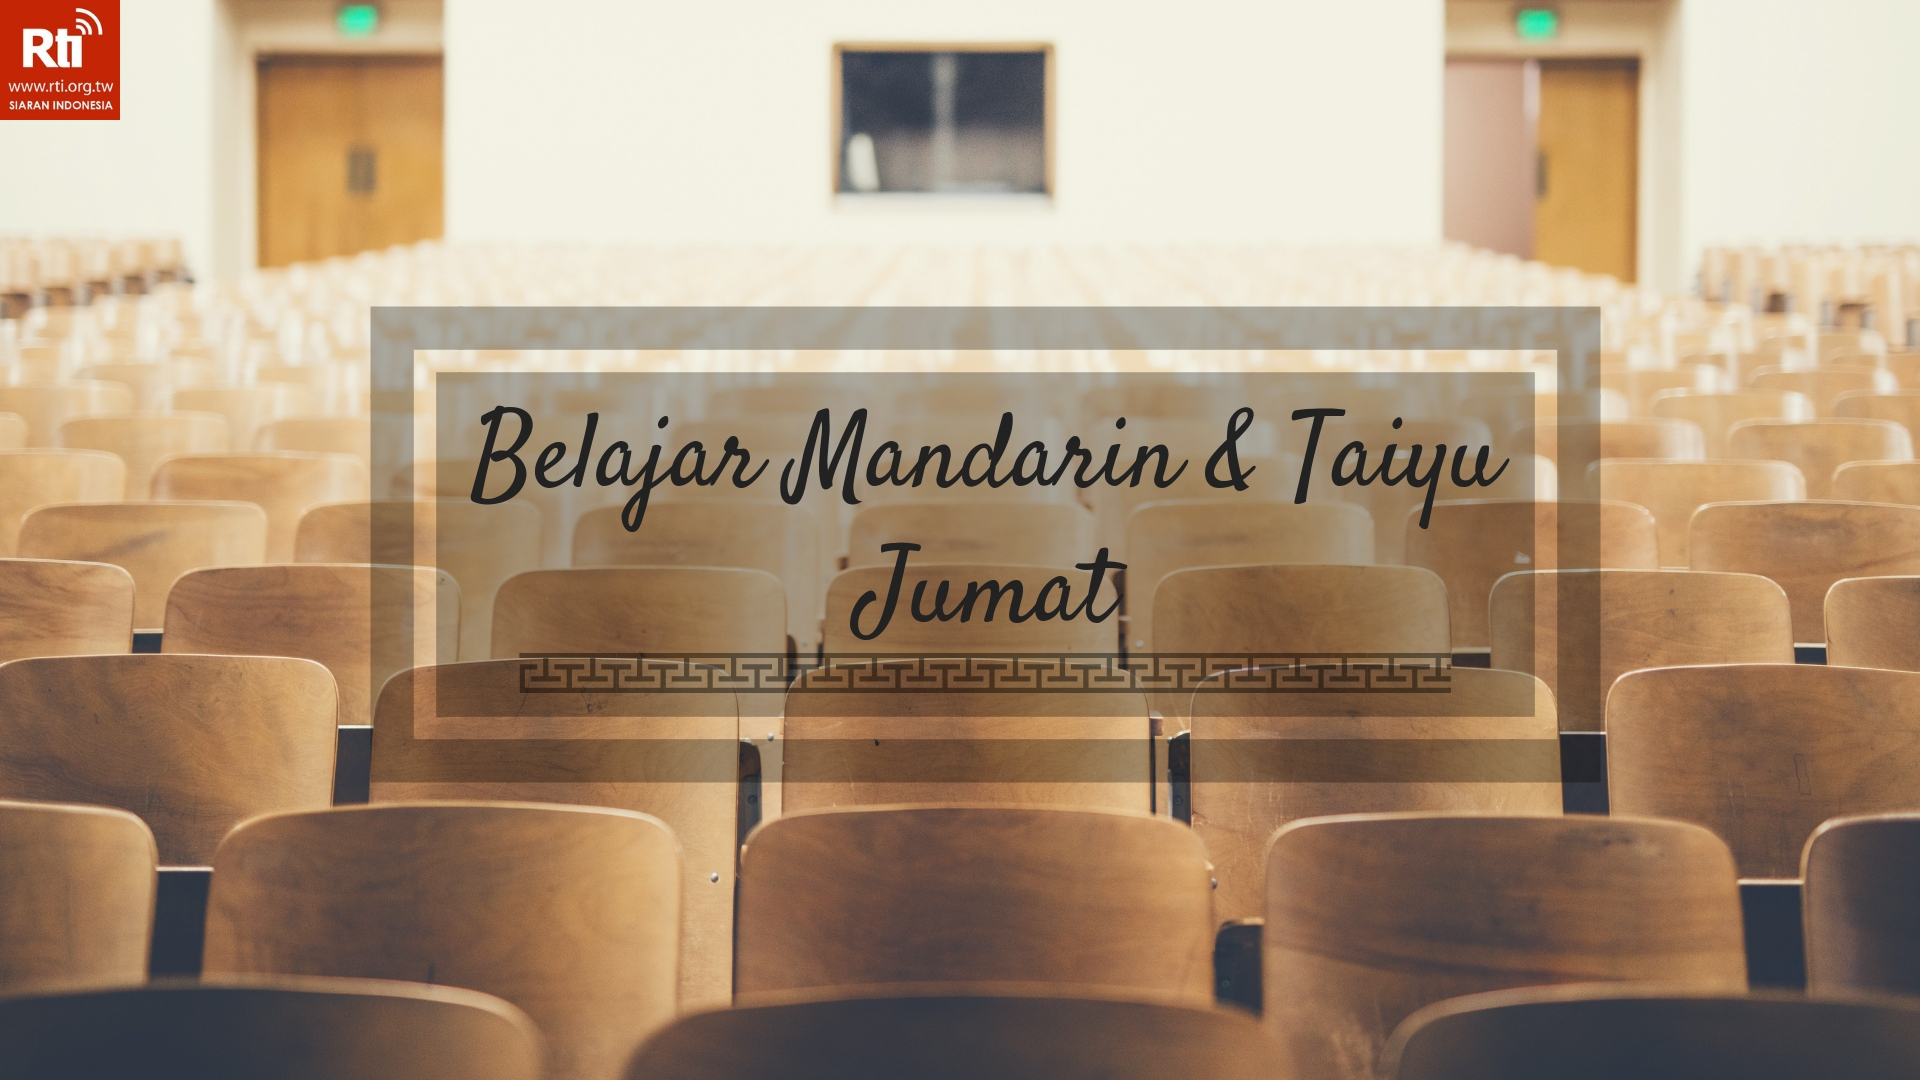 Belajar Mandarin taiyu dan Bahasa Indonesia Edisi Pepatah Taiwan 台灣諺語篇: 準備persiapan